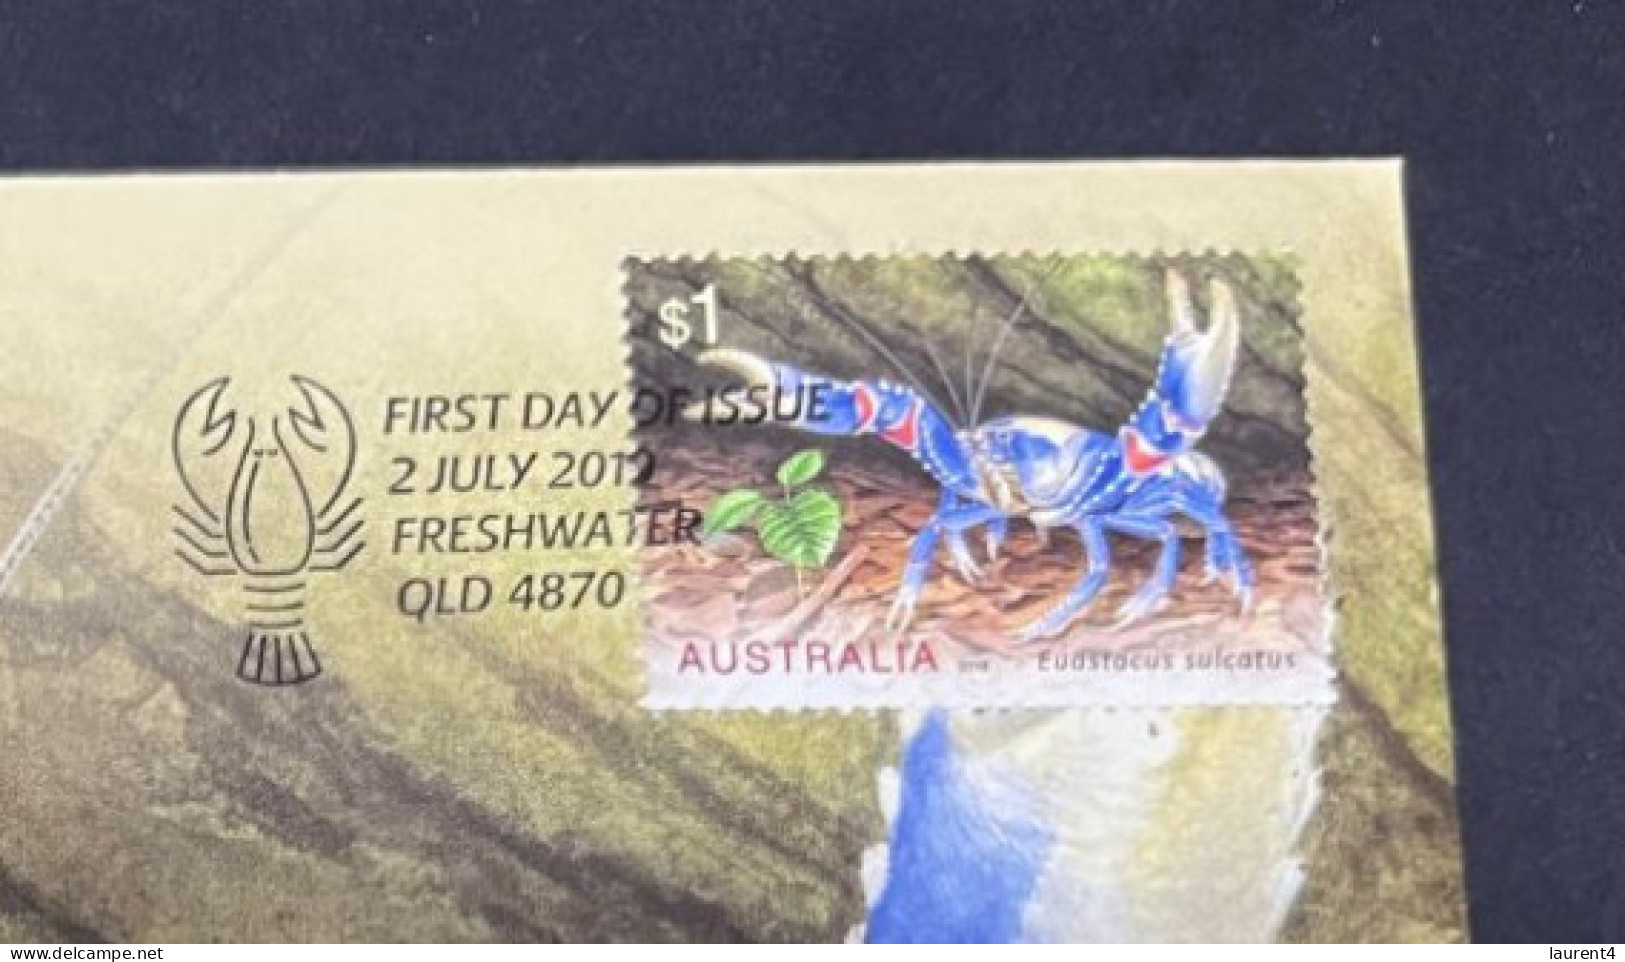 5-5-2024 (4 Z 14) Australia Freshwater 2019 Crayfish Medallion Colored Cover (seashell / Coquillage / Crab) 0363/2000 - Wertmarken (Kriegsgefangenen)